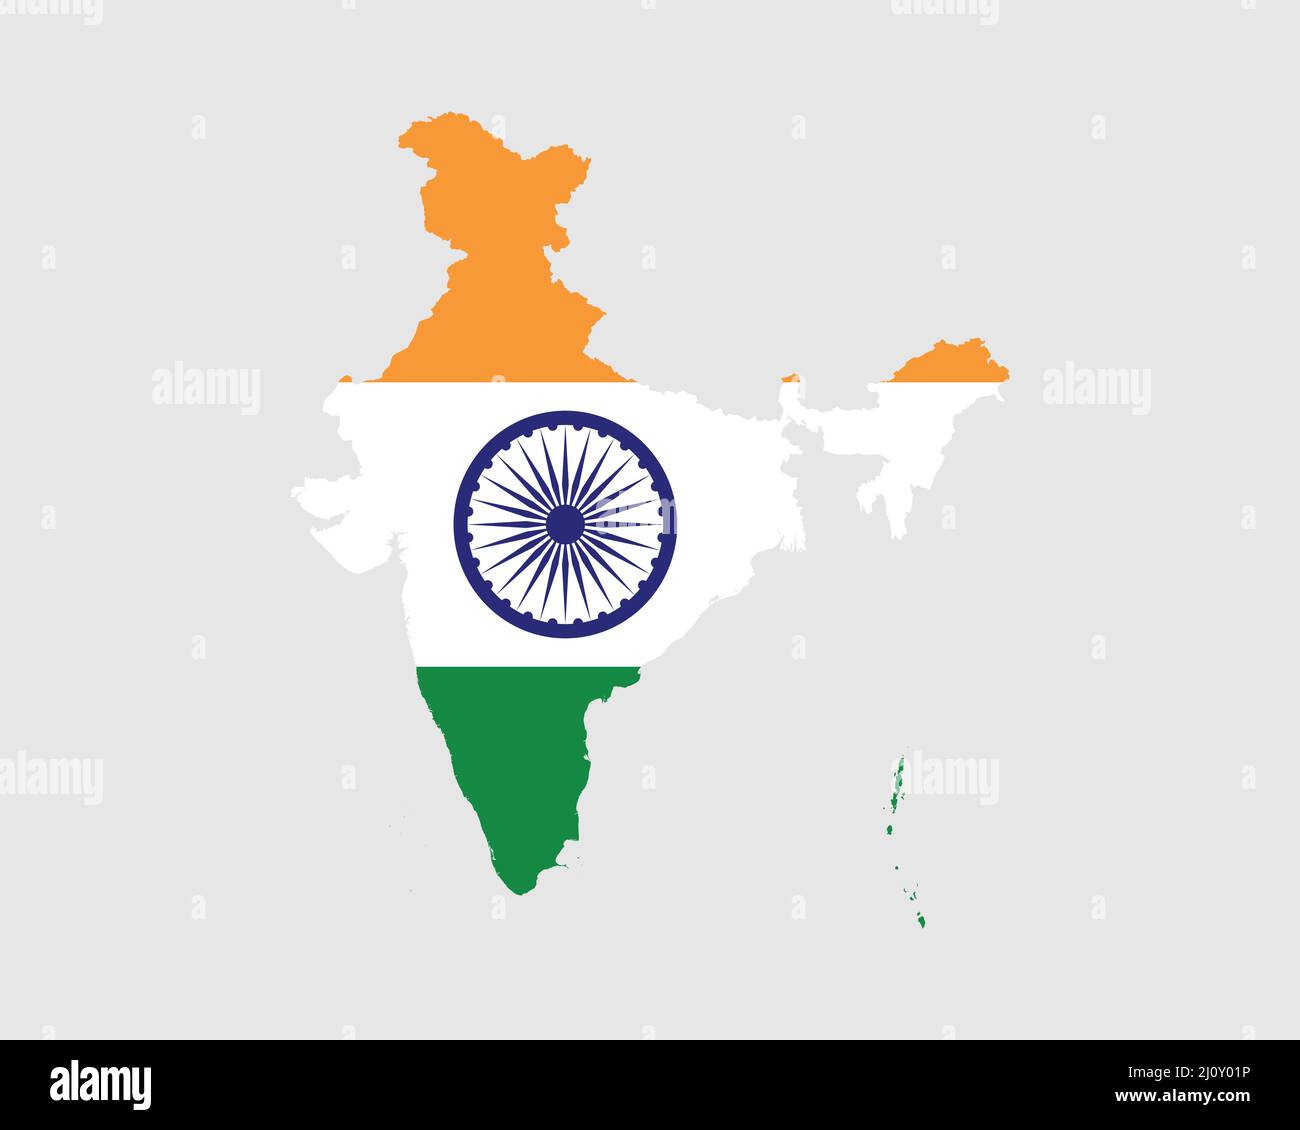 Indien Karte Flagge. Karte der Republik Indien mit dem indischen Länderbanner. Vektorgrafik. Stock Vektor